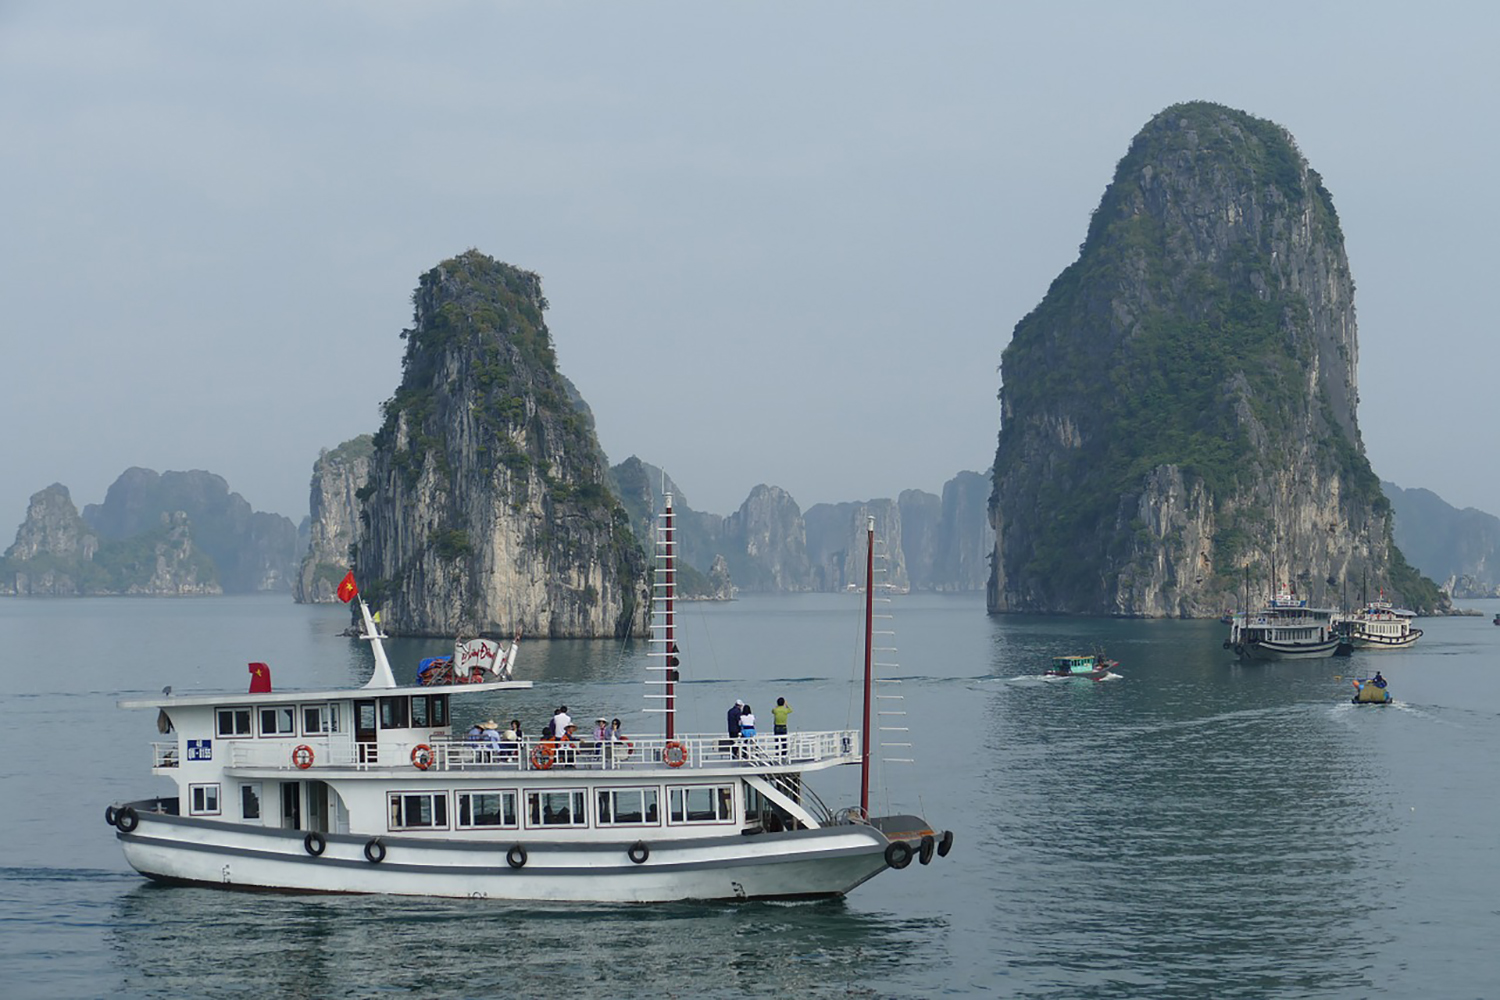 Les promenades en bateau dans la baie sont très appréciées des touristes vietnamiens et étrangers ©pixabay creative commons CC0